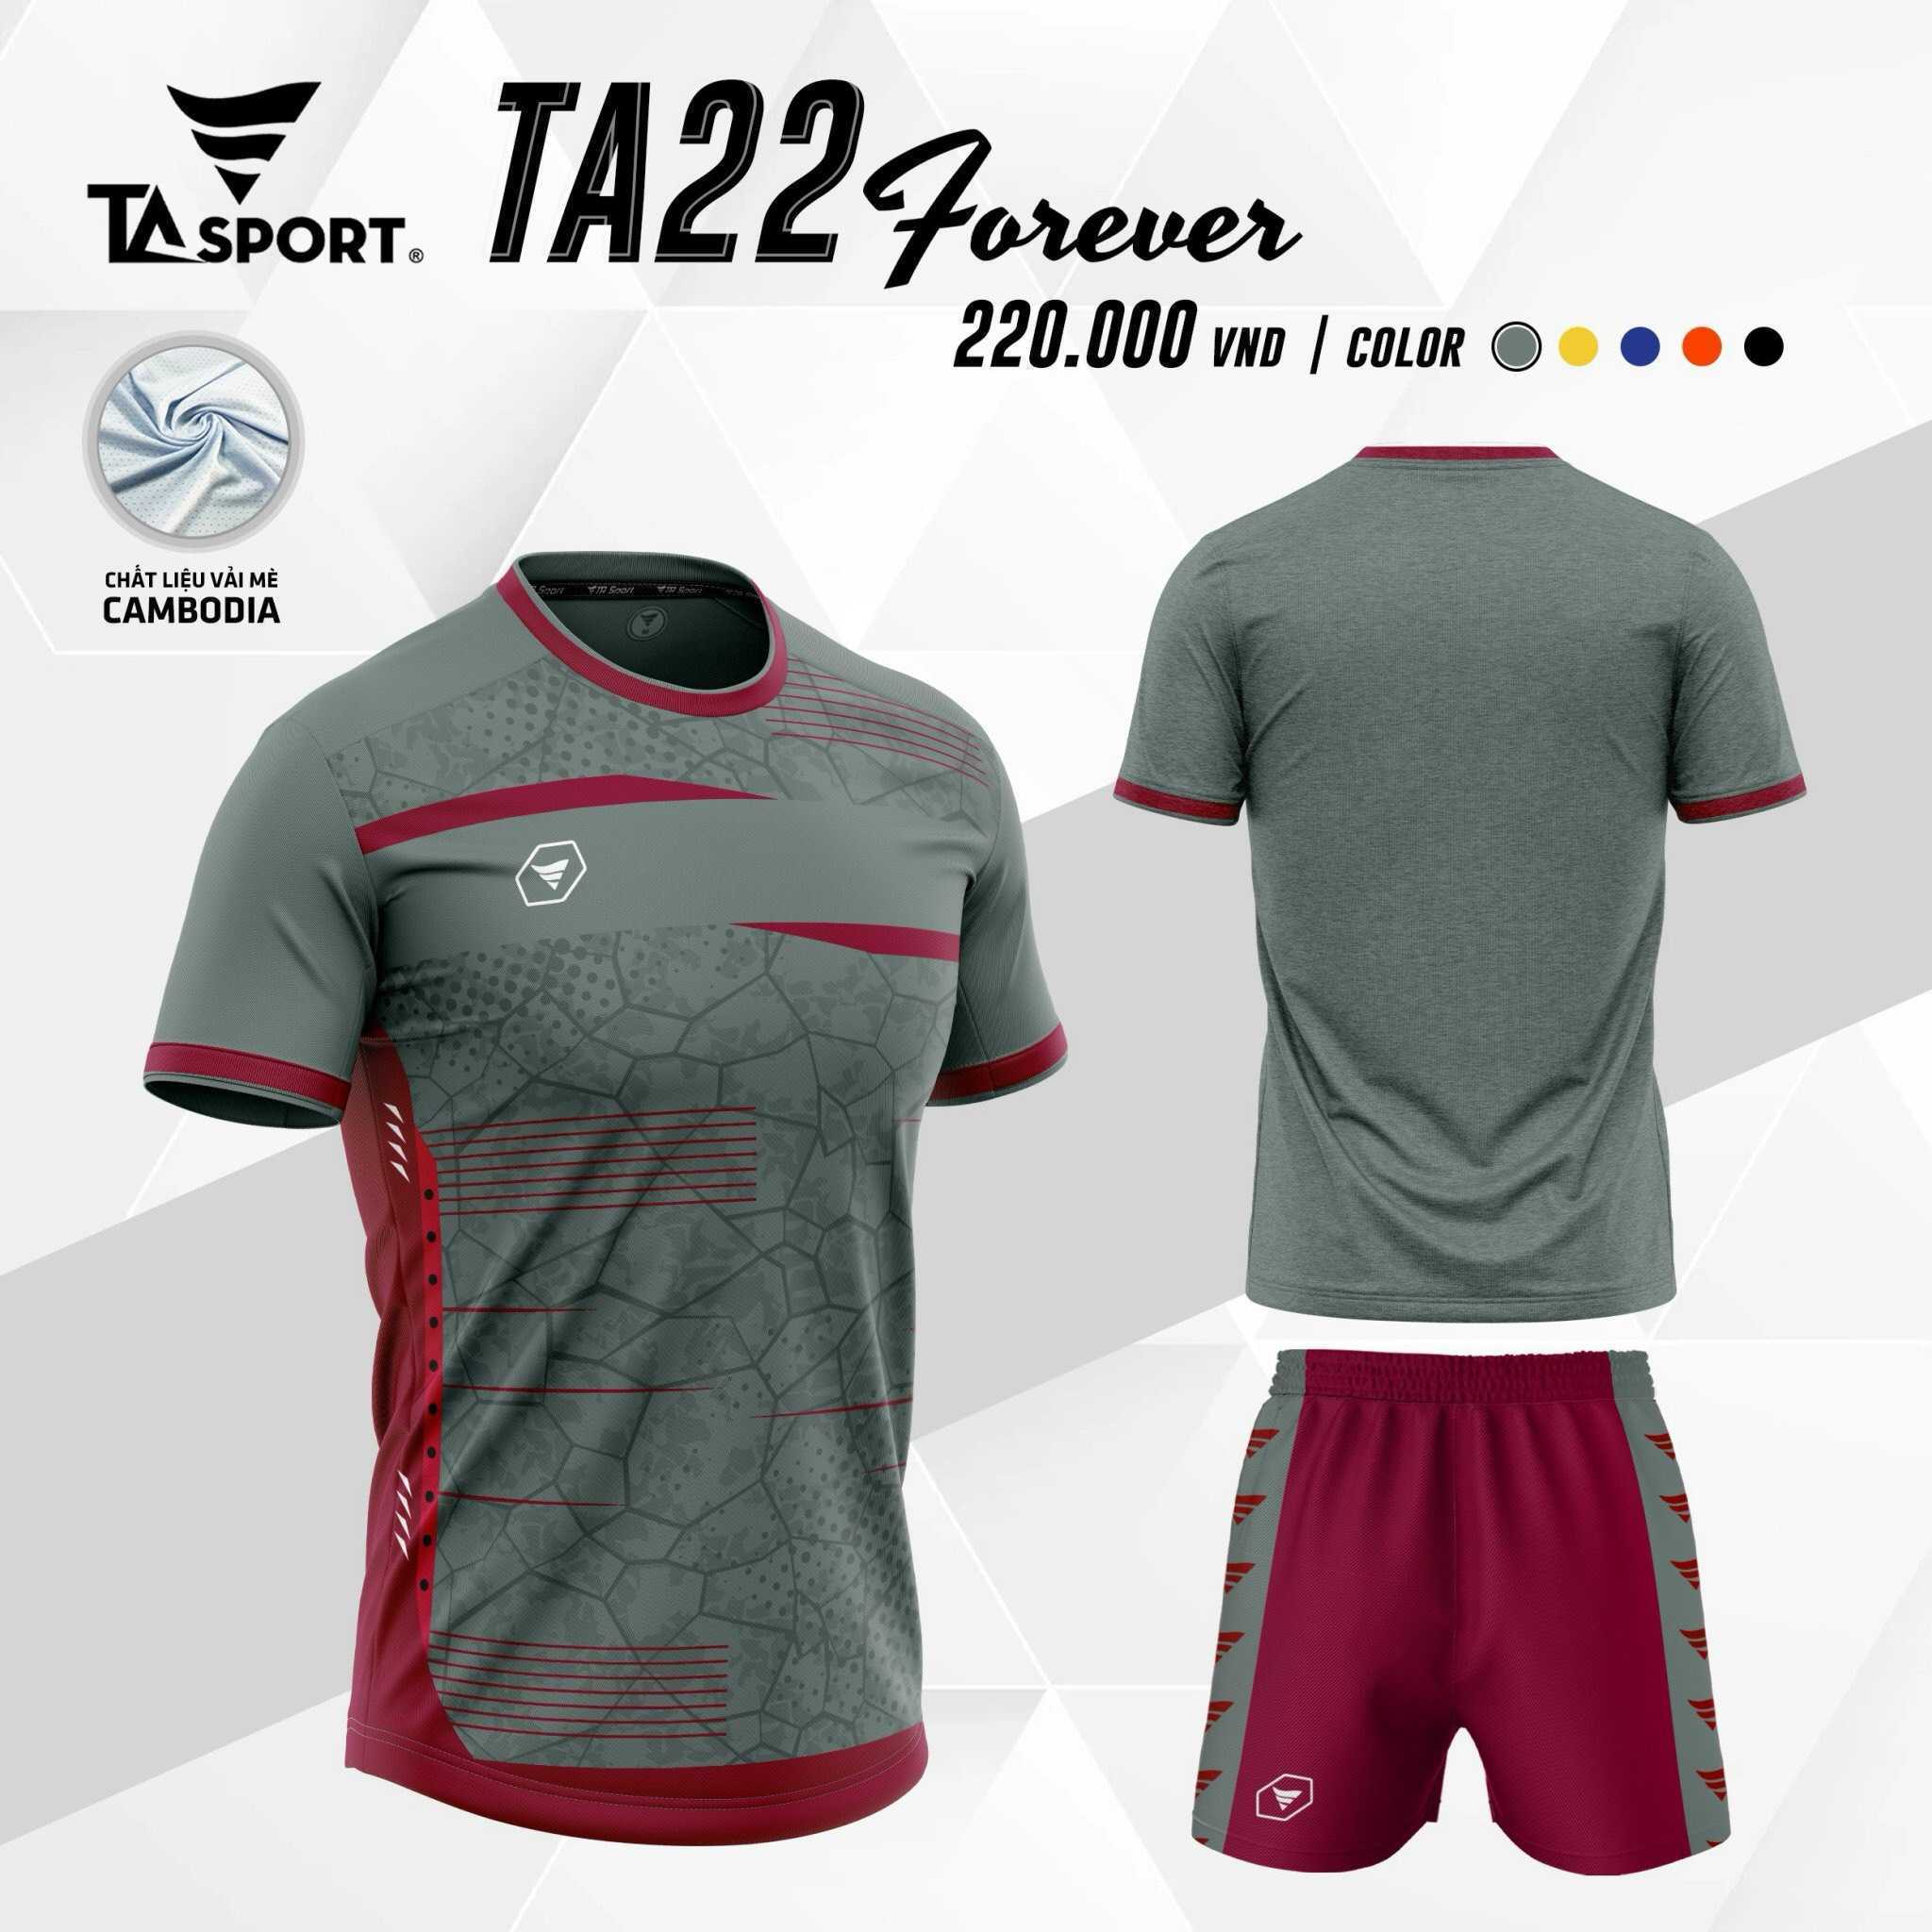 Bộ quần áo thể thao bóng đá chính hãng TA Sport TA22 Forever vải mè Cambodia nhiều màu trắng đen